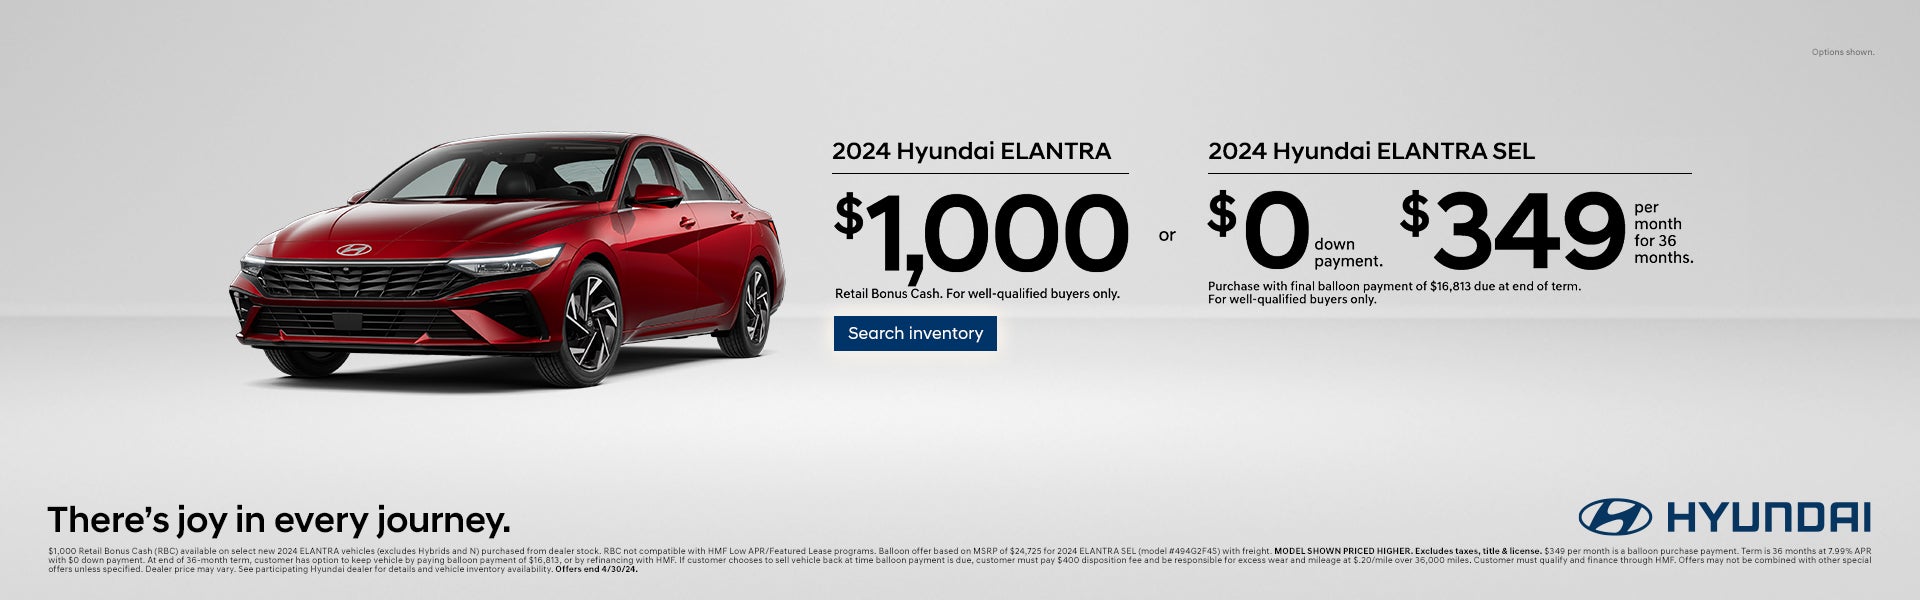 2024 Hyundai Elanta Offer